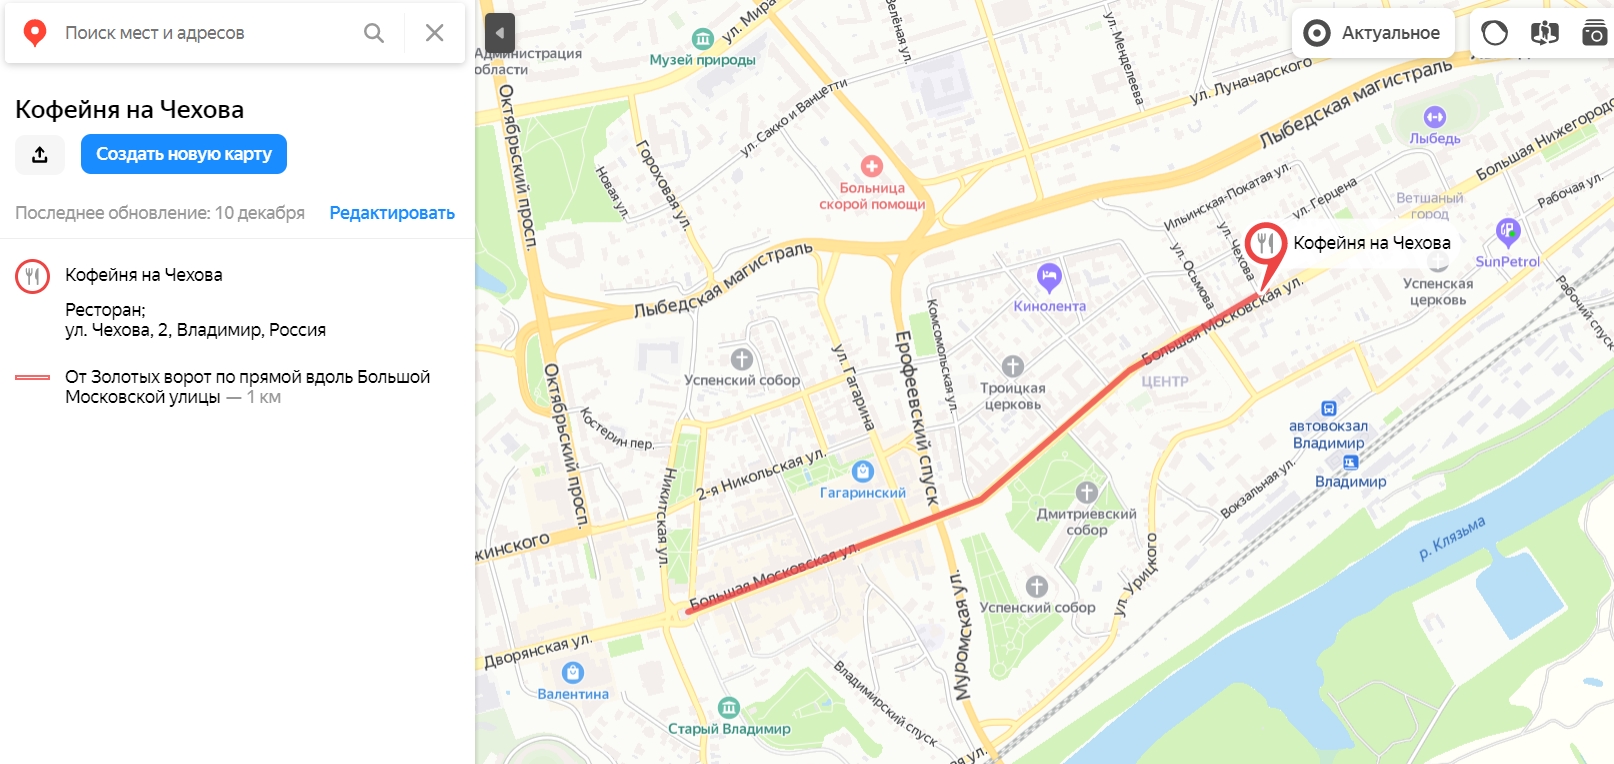 Яндекс.Карта с меткой кафе для вставки на сайт